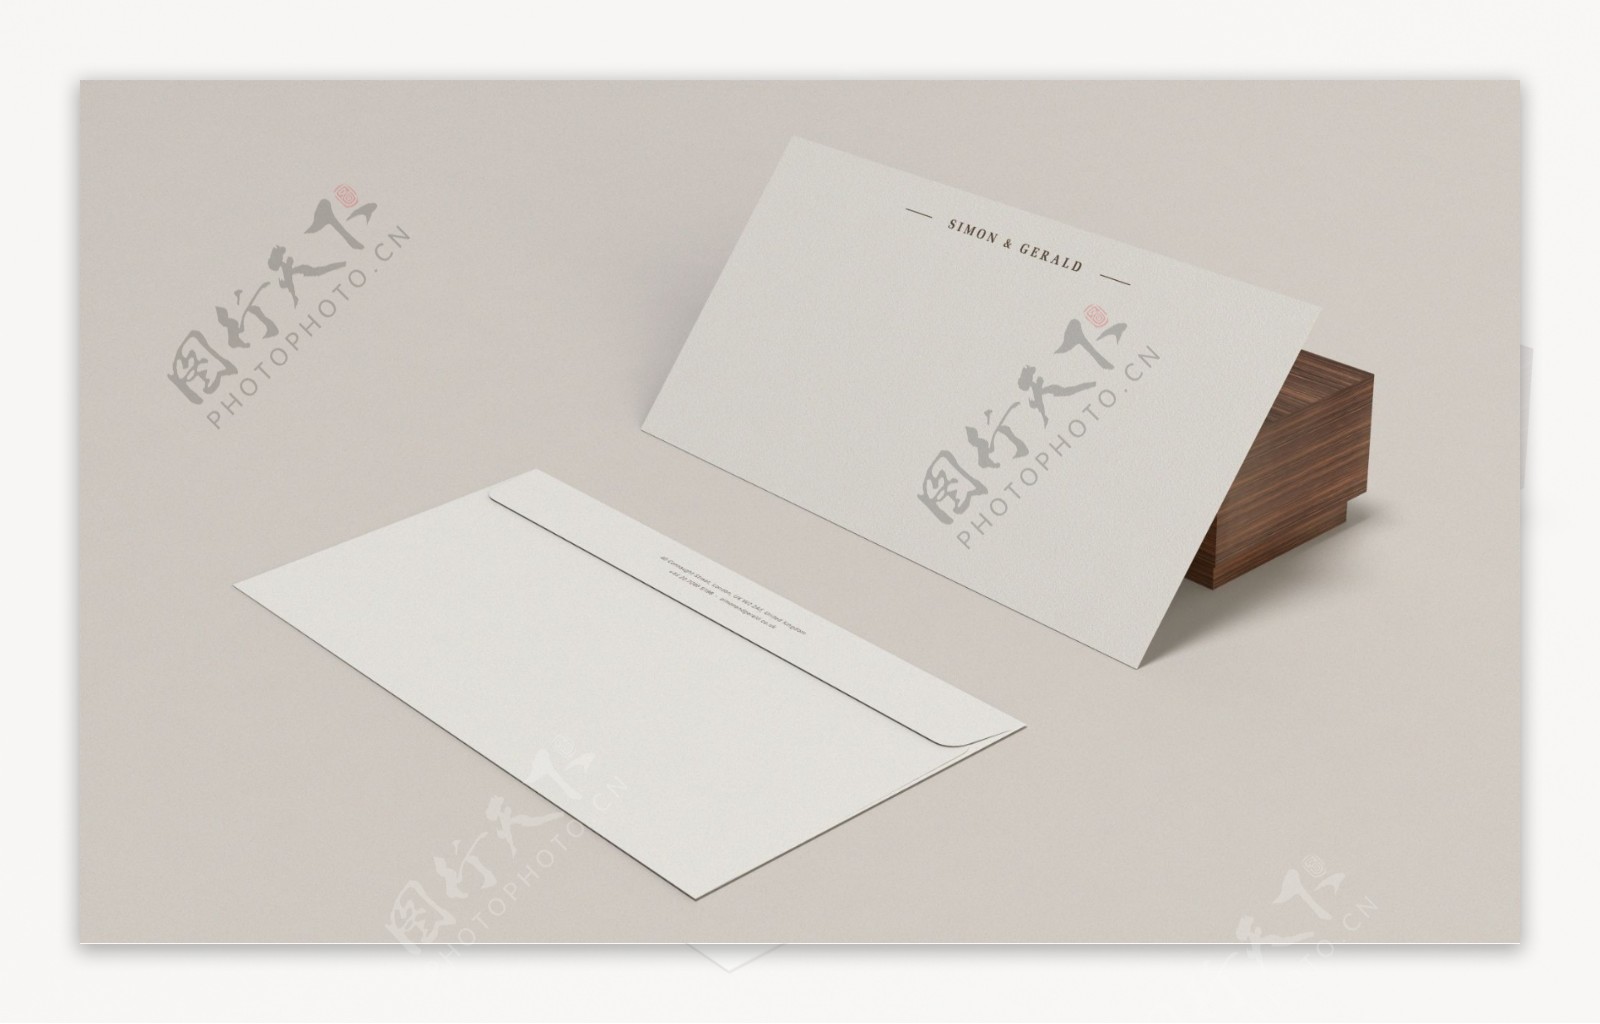 信纸信封效果图设计智能贴图模版样机